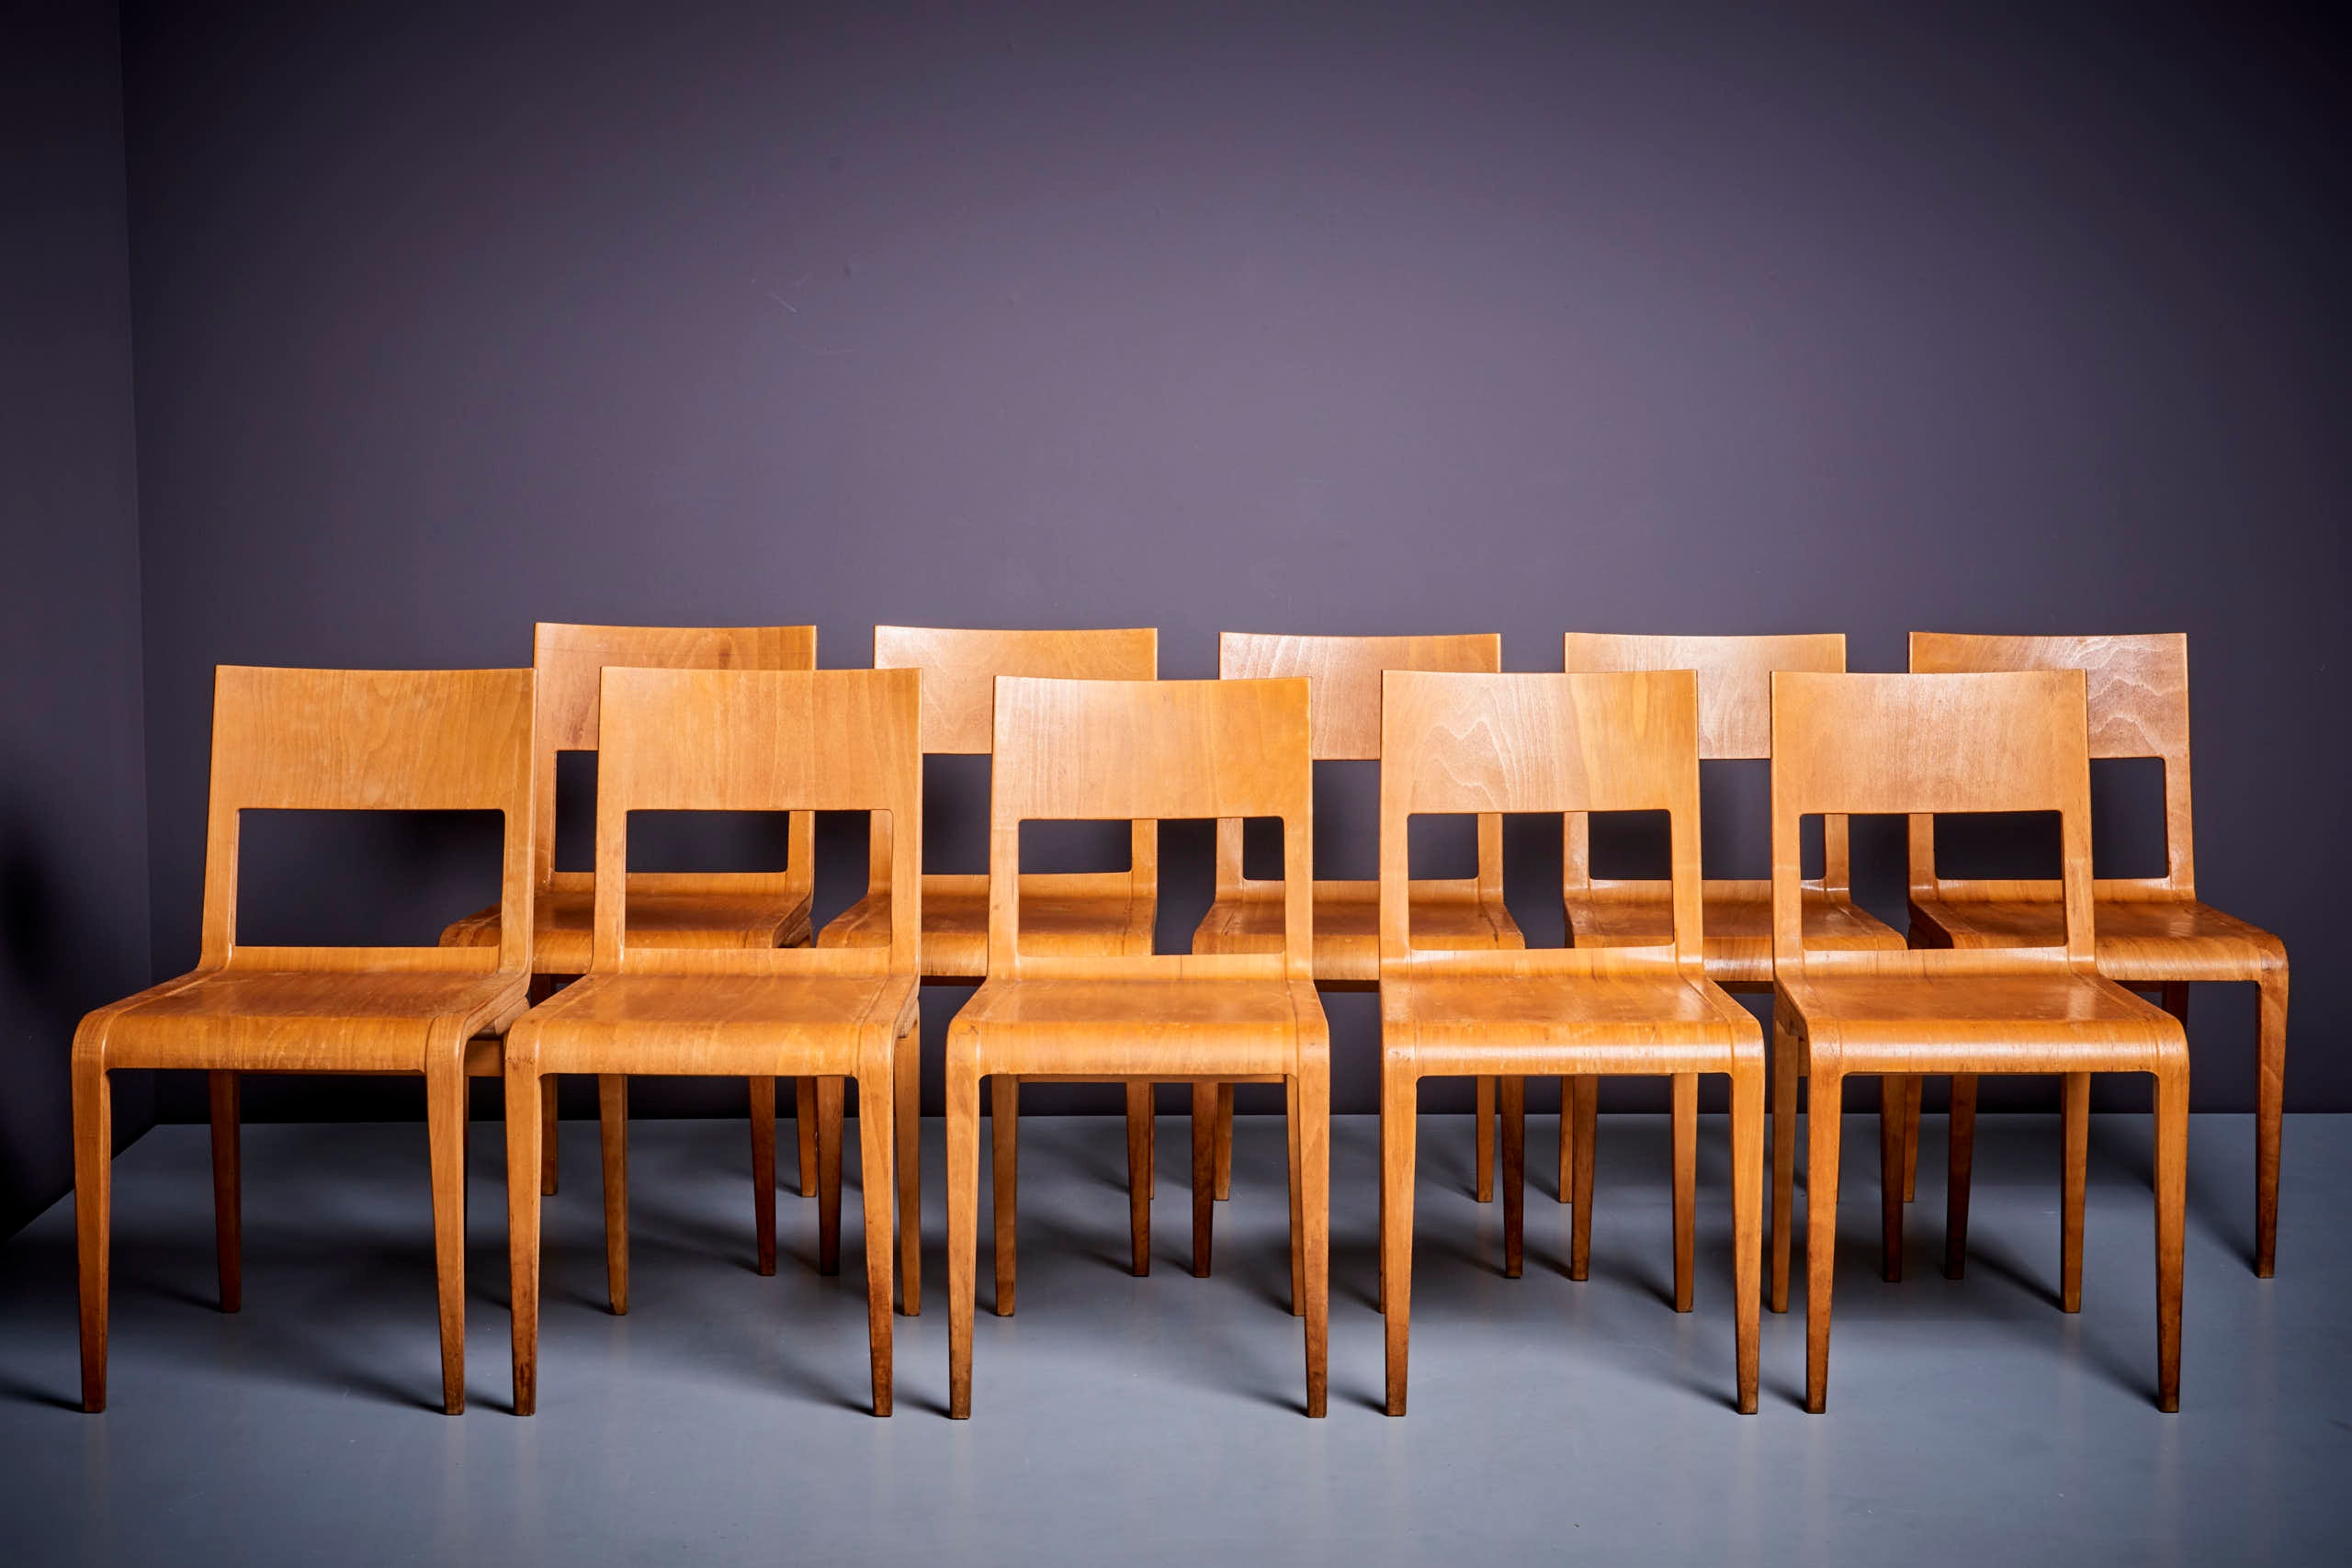 Ensemble de 10 chaises de salle à manger Erich Menzel modèle 50642 pour Hellerau, Allemagne - années 1950. 